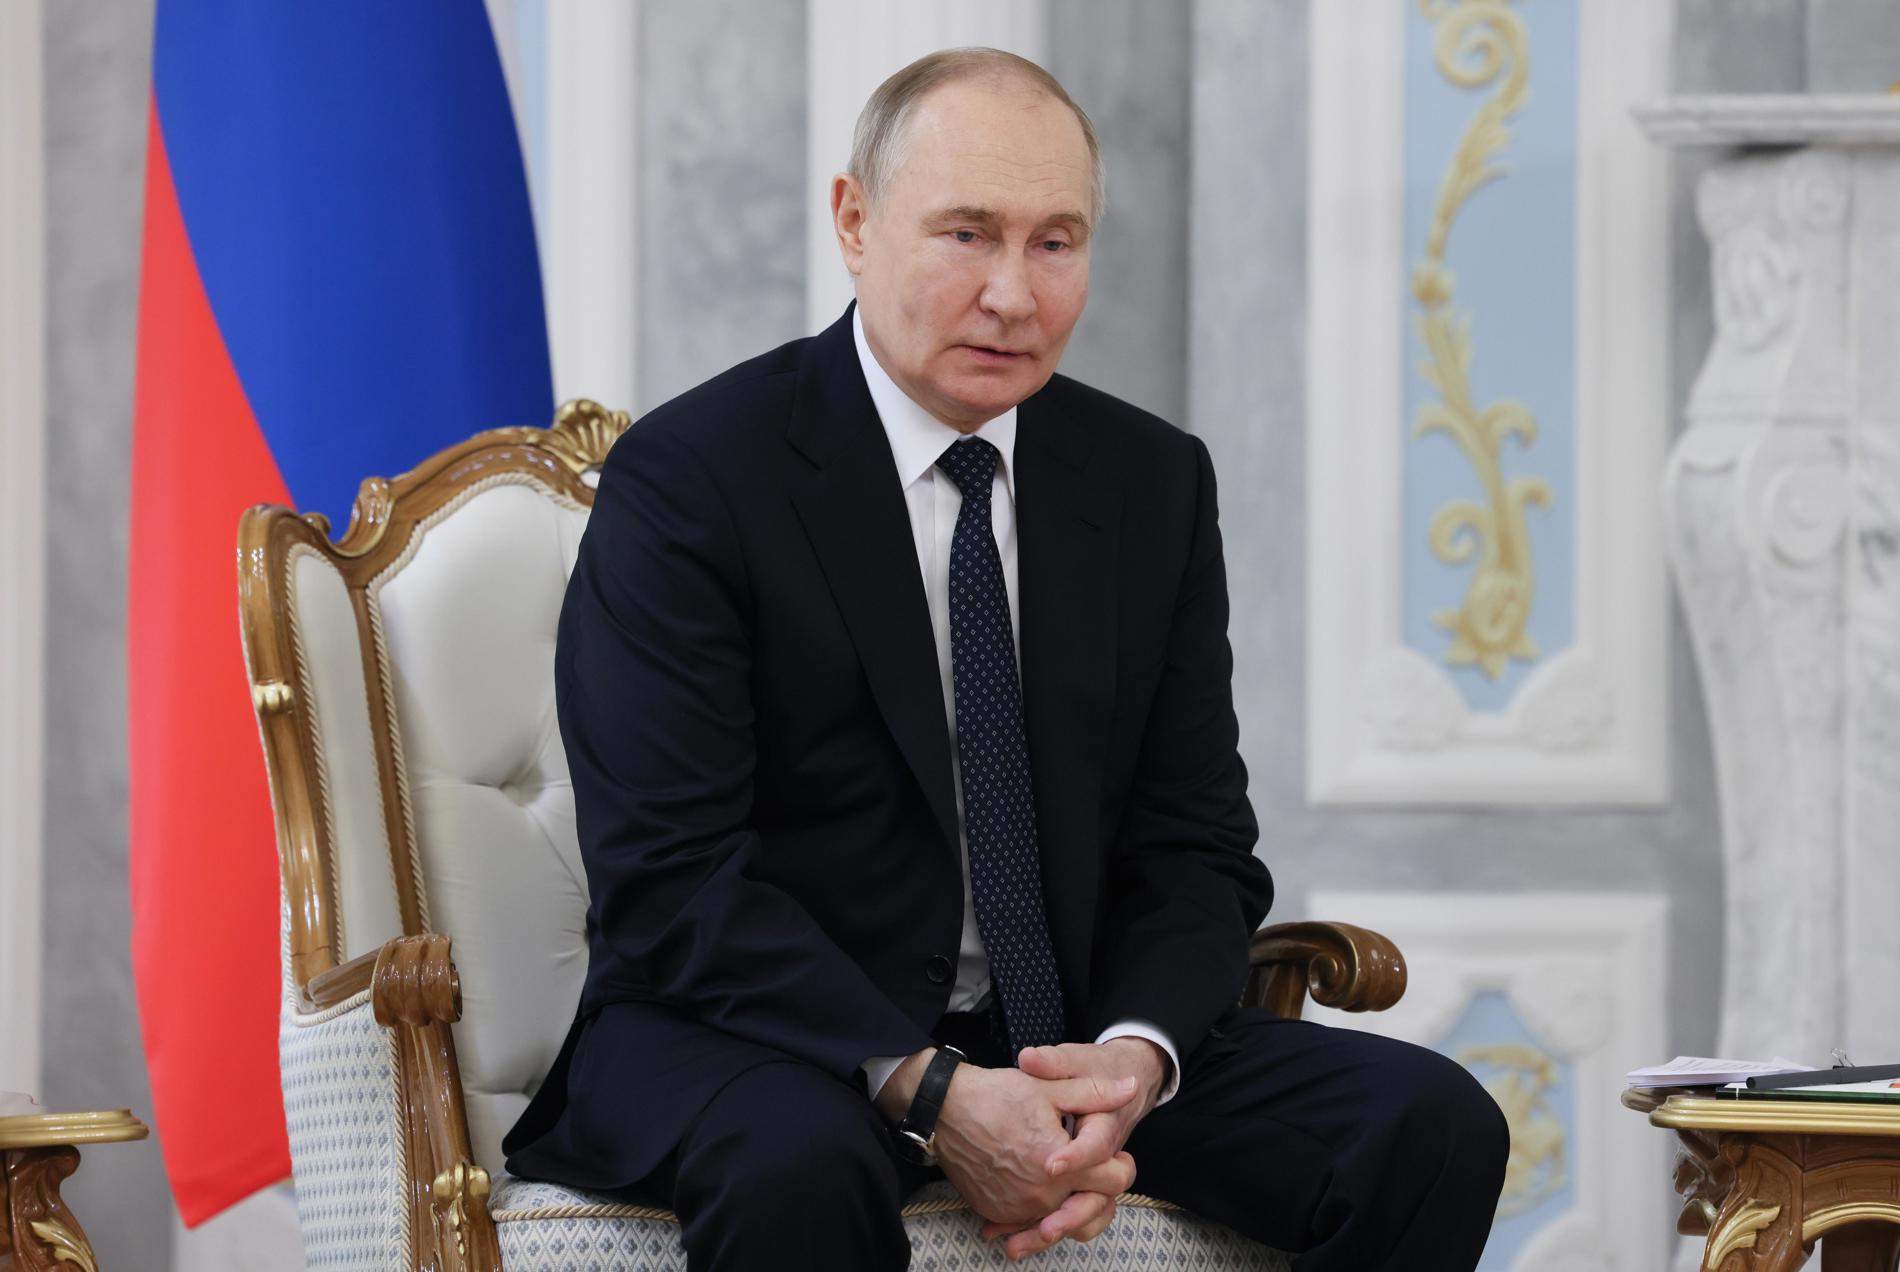 ¿Por qué Putin está abierto a detener la guerra si Occidente reconoce las fronteras actuales?